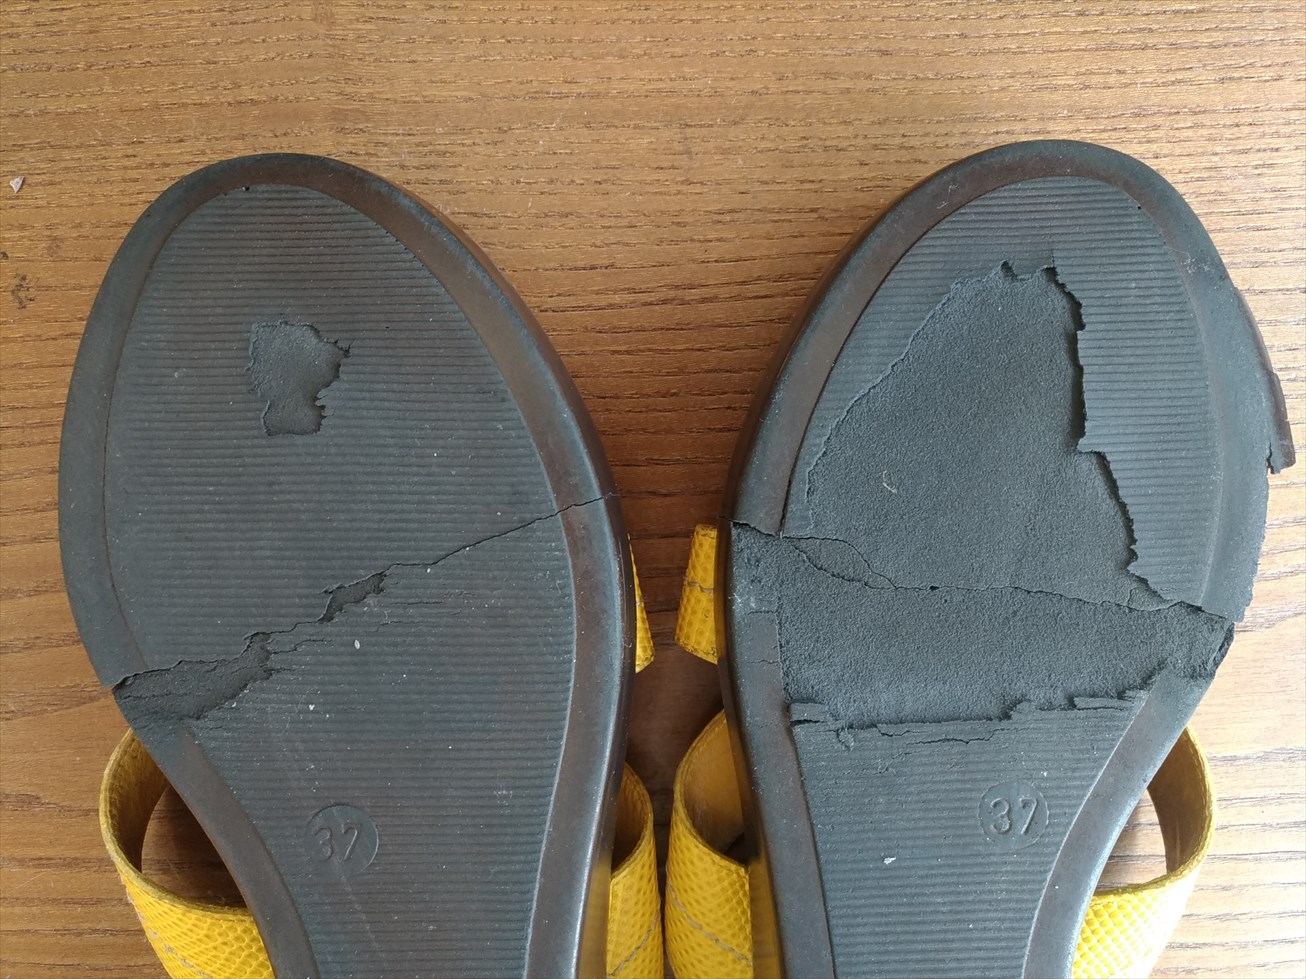 靴修理専門店 タロンタロン 靴のかかと修理で後悔しないために知っておいてほしいこと